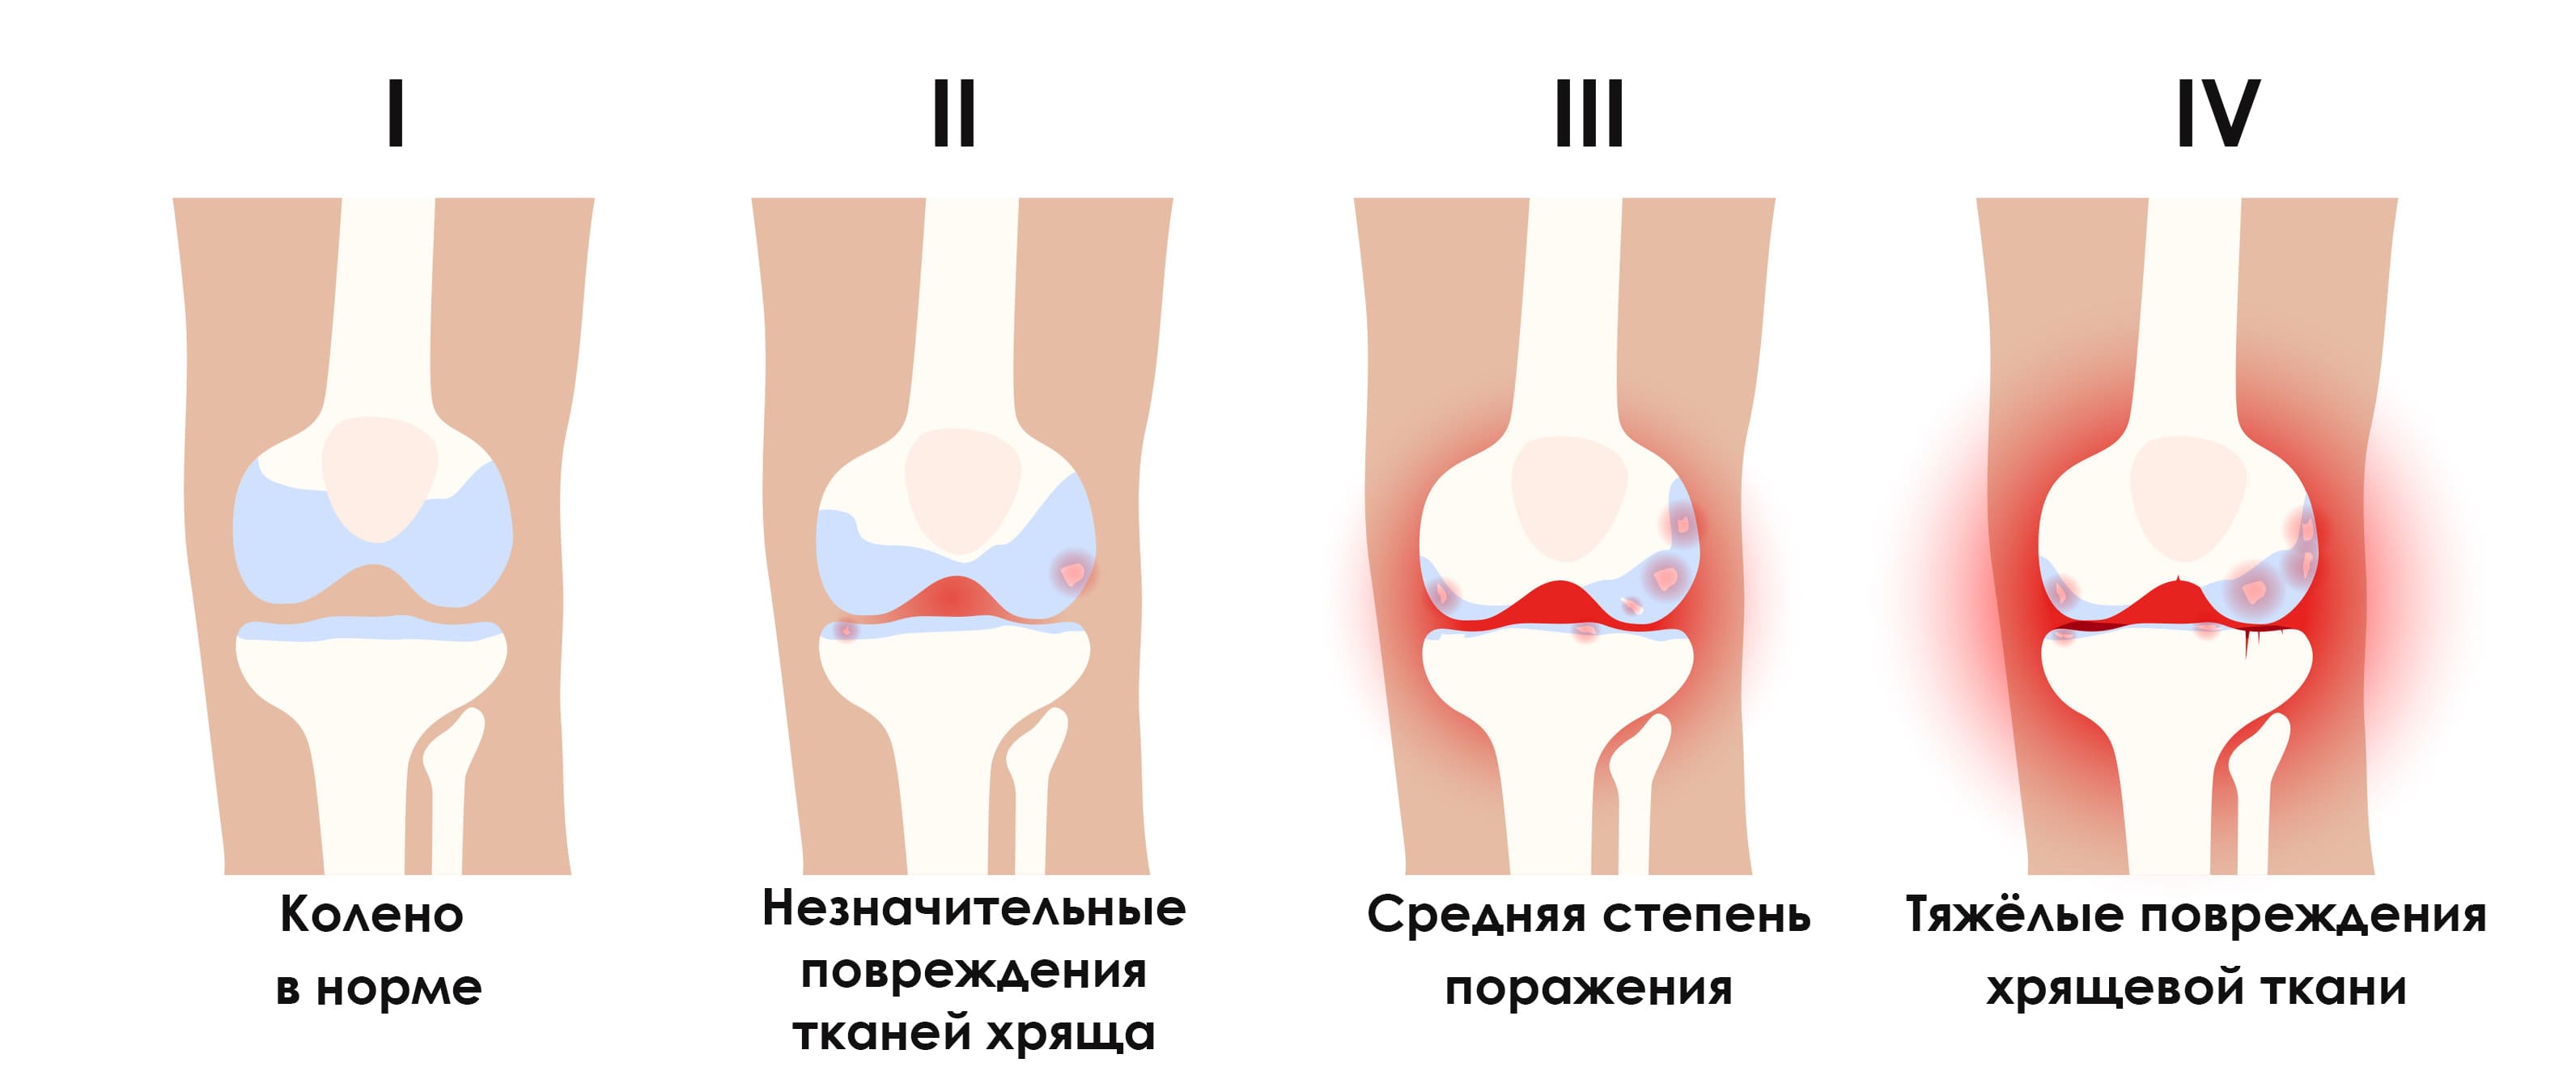 Лечение артроза коленного сустава (гонартроза)